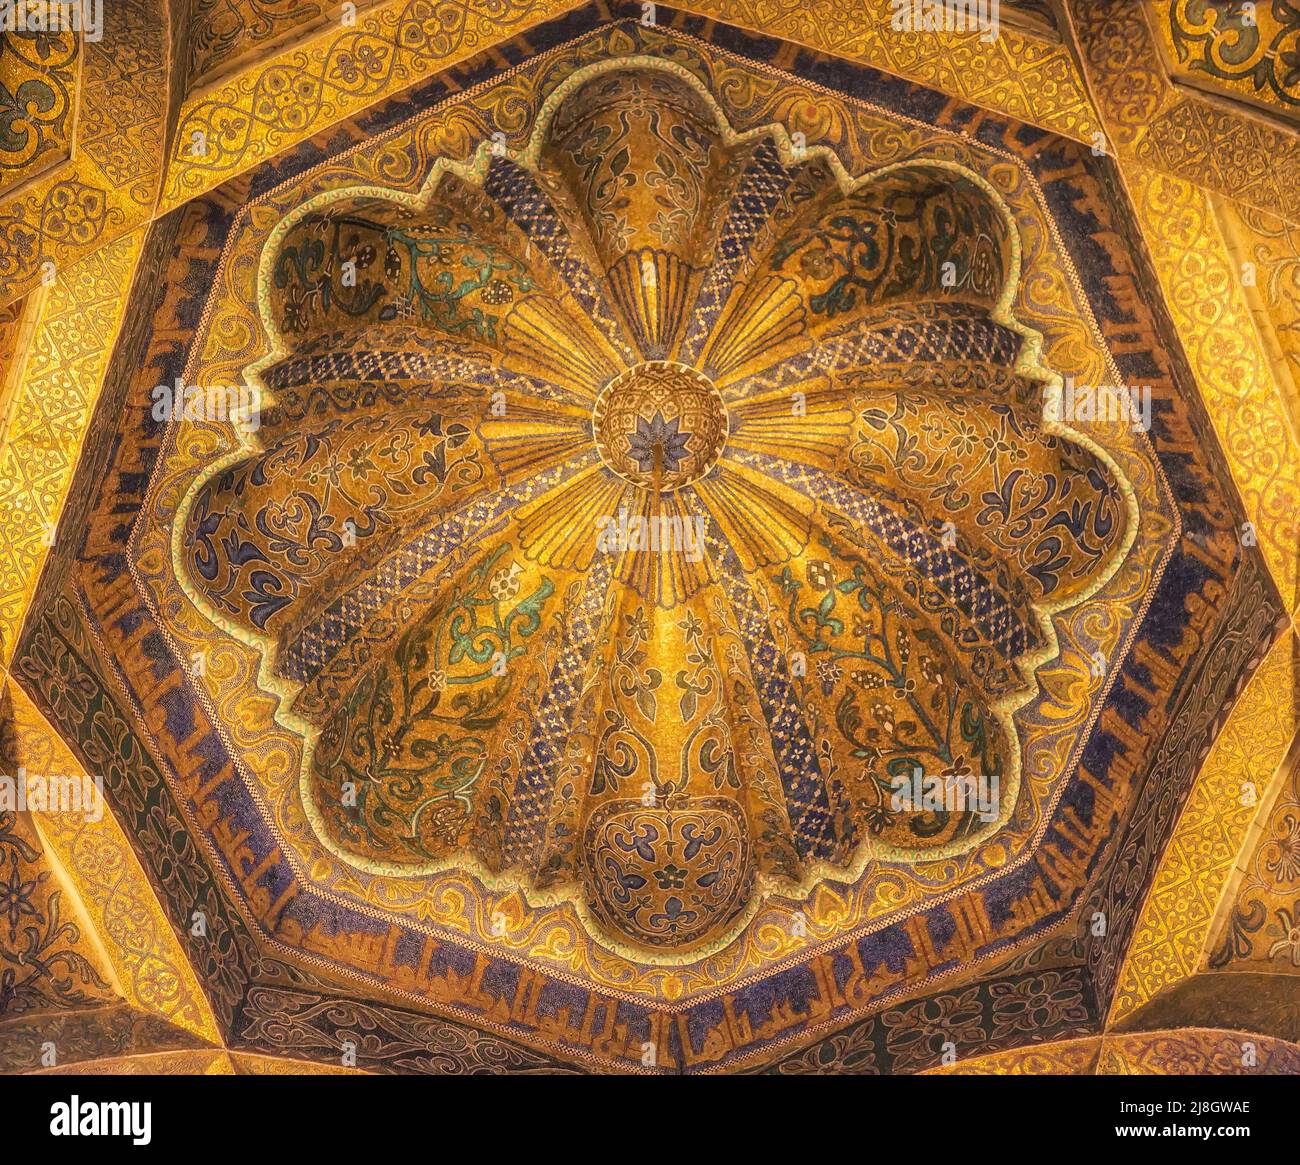 Cordoue, province de Cordoue, Andalousie, sud de l'Espagne. Le dôme du mihrab de la Grande Mosquée, la Mezquita. La mosquée de Cordoue est un ver de l'UNESCO Banque D'Images